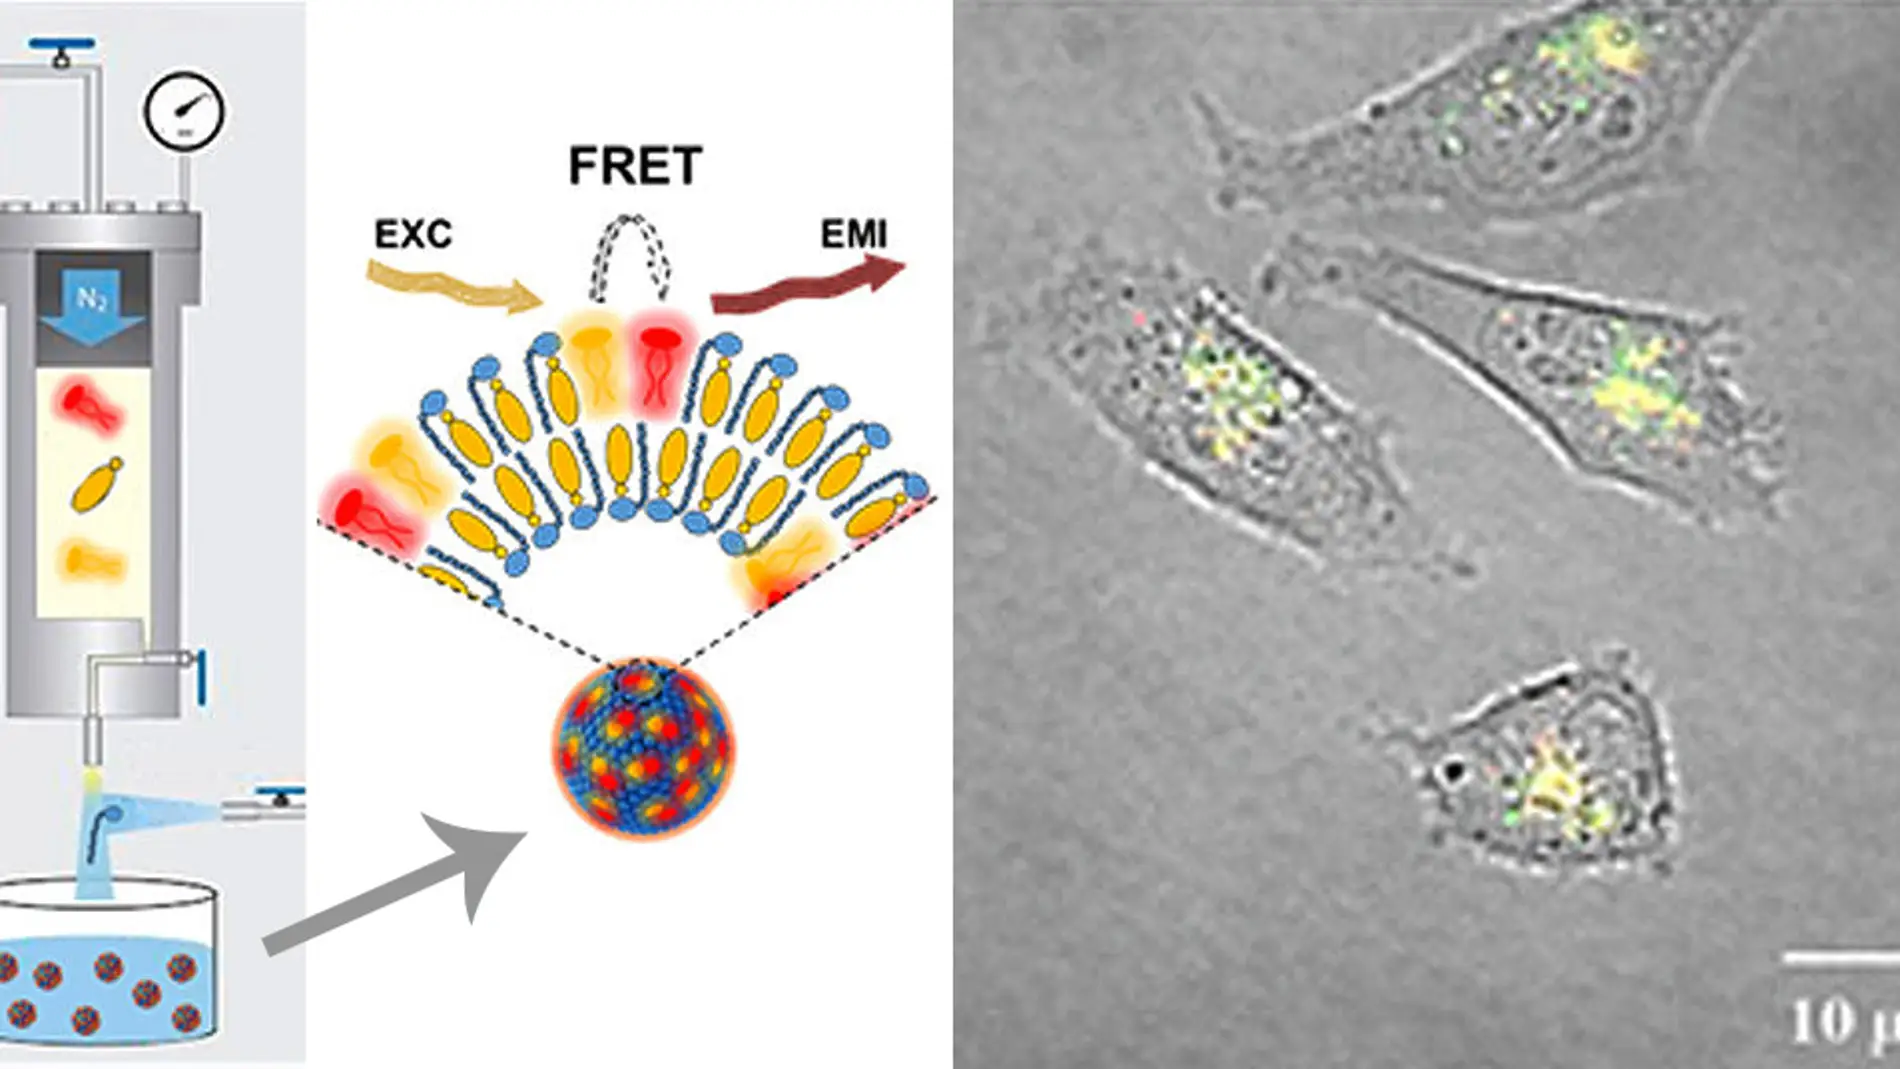 Nuevas nanoparticulas fluorescentes para ver el interior celular